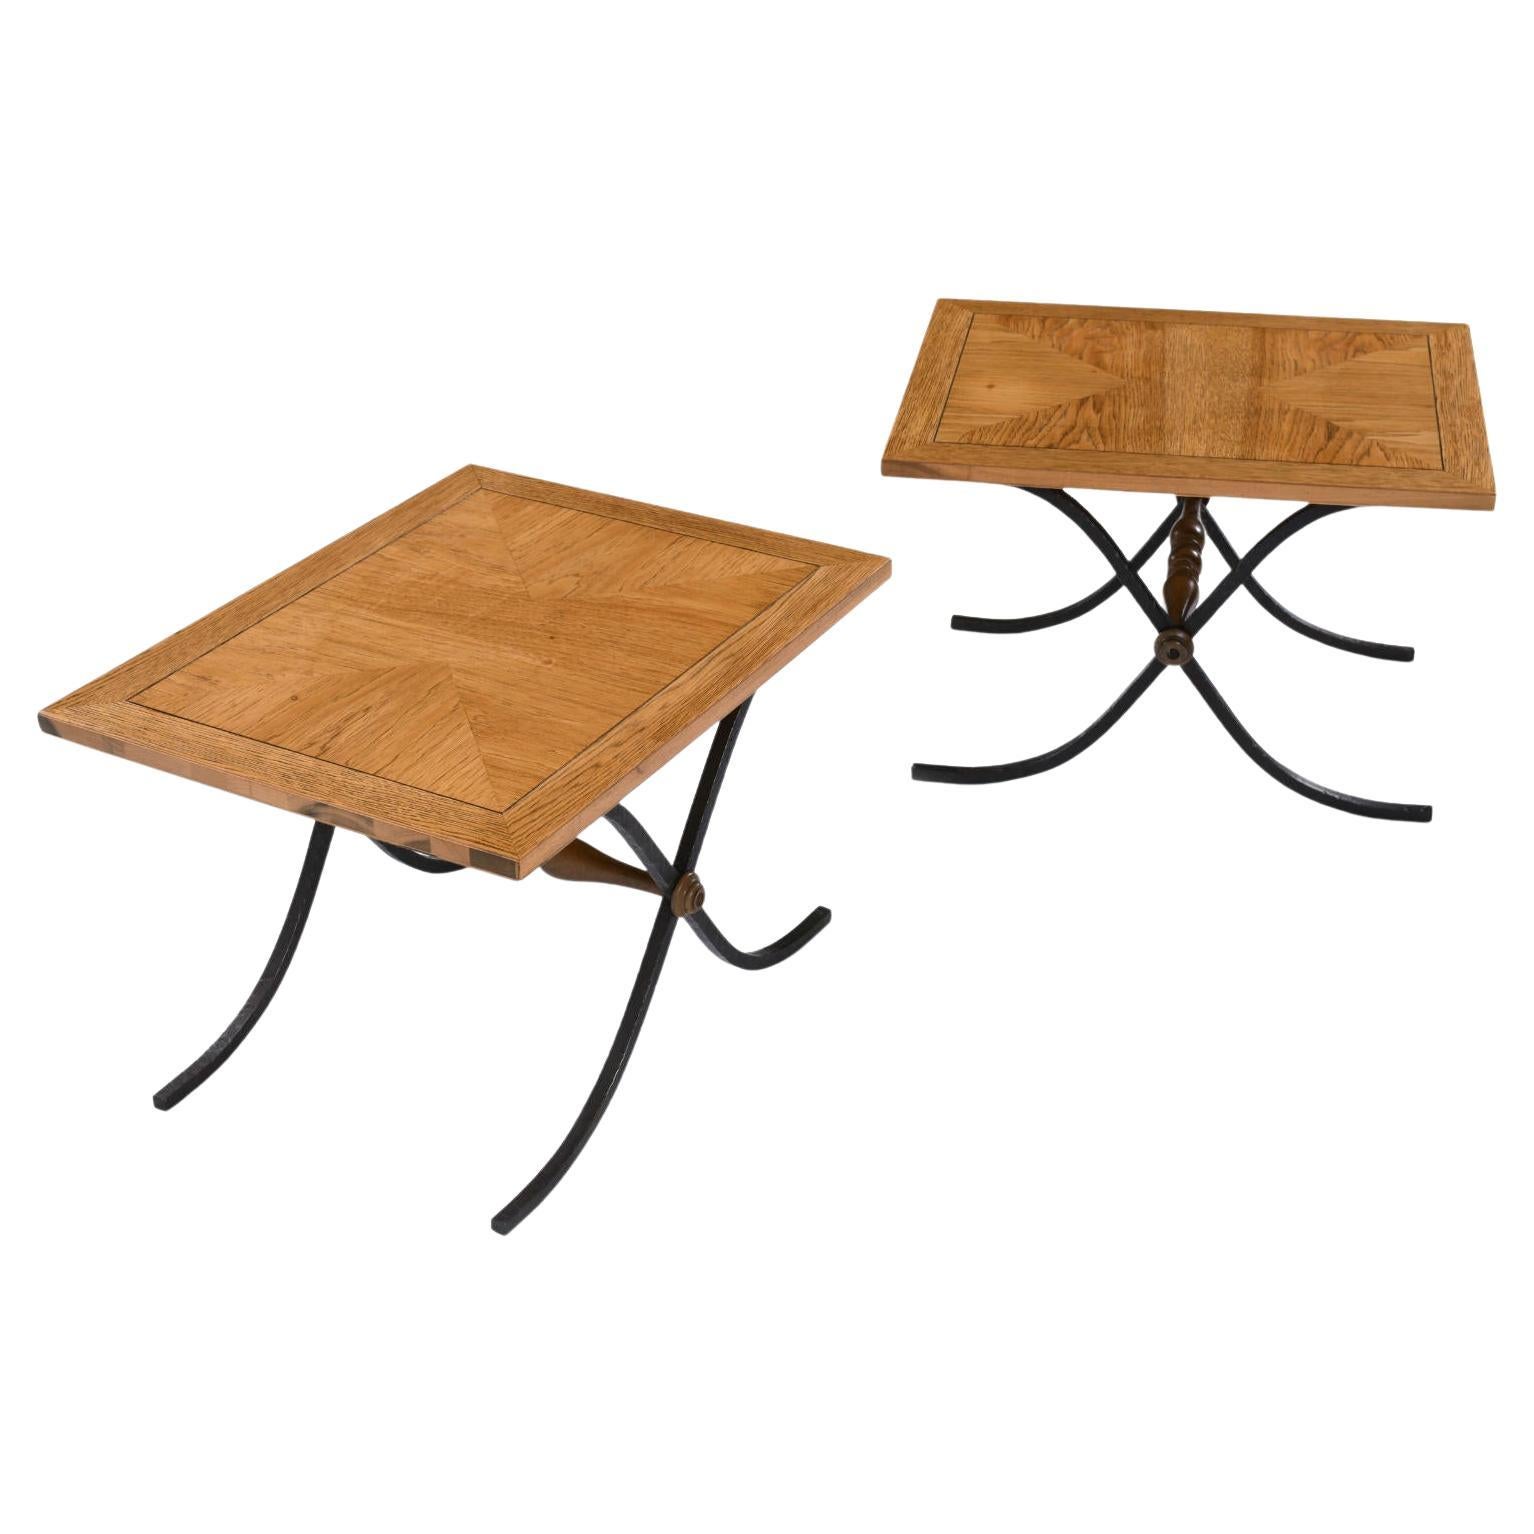 Pair Parquet Oak Petite Side Tables with Iron x Base Sabre Legs